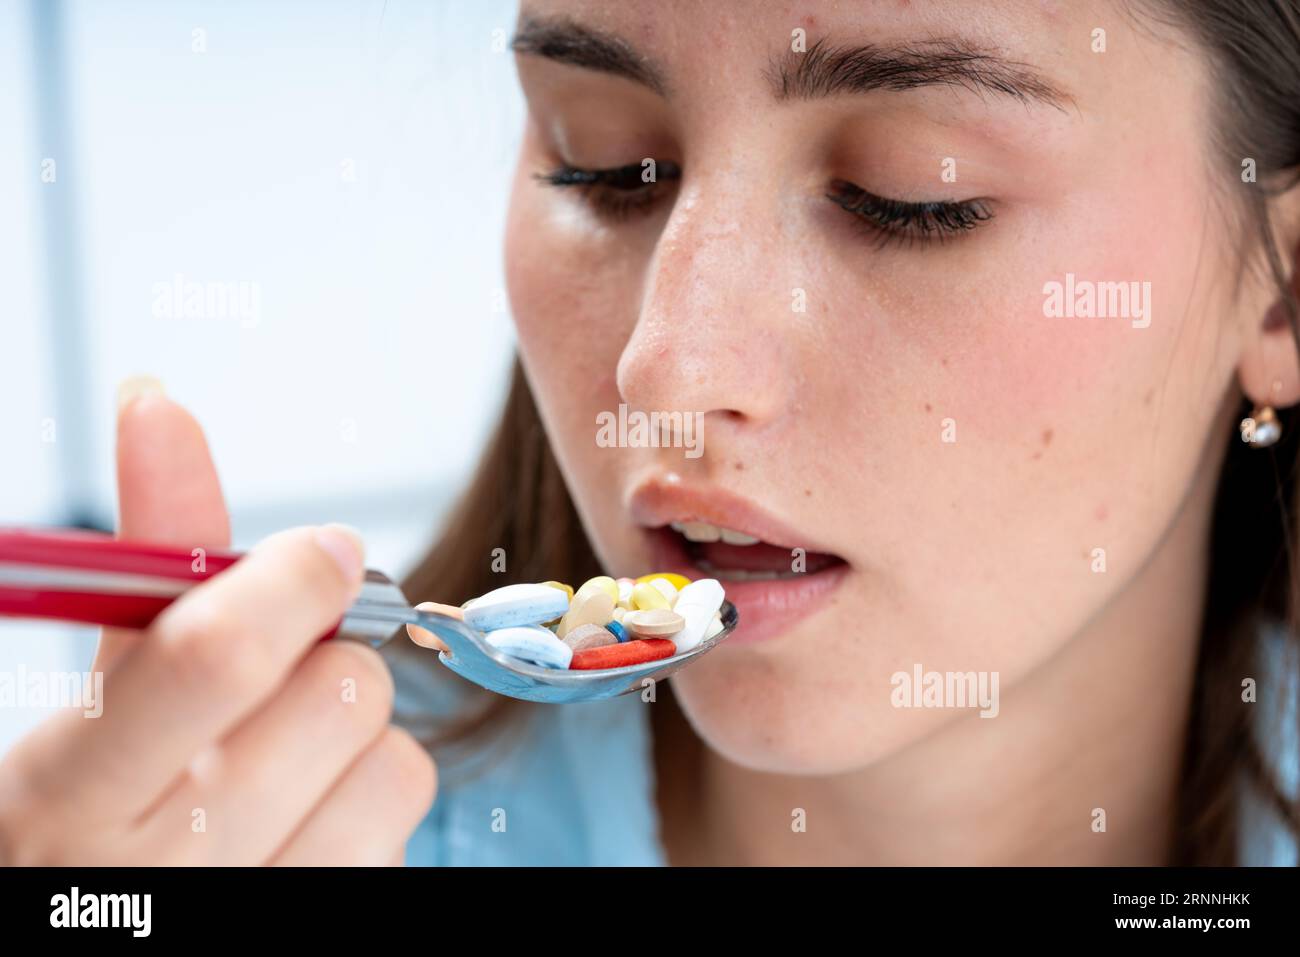 une fille apporte une cuillère remplie de pilules à sa bouche. la notion de médication incontrôlée et de toxicomanie Banque D'Images